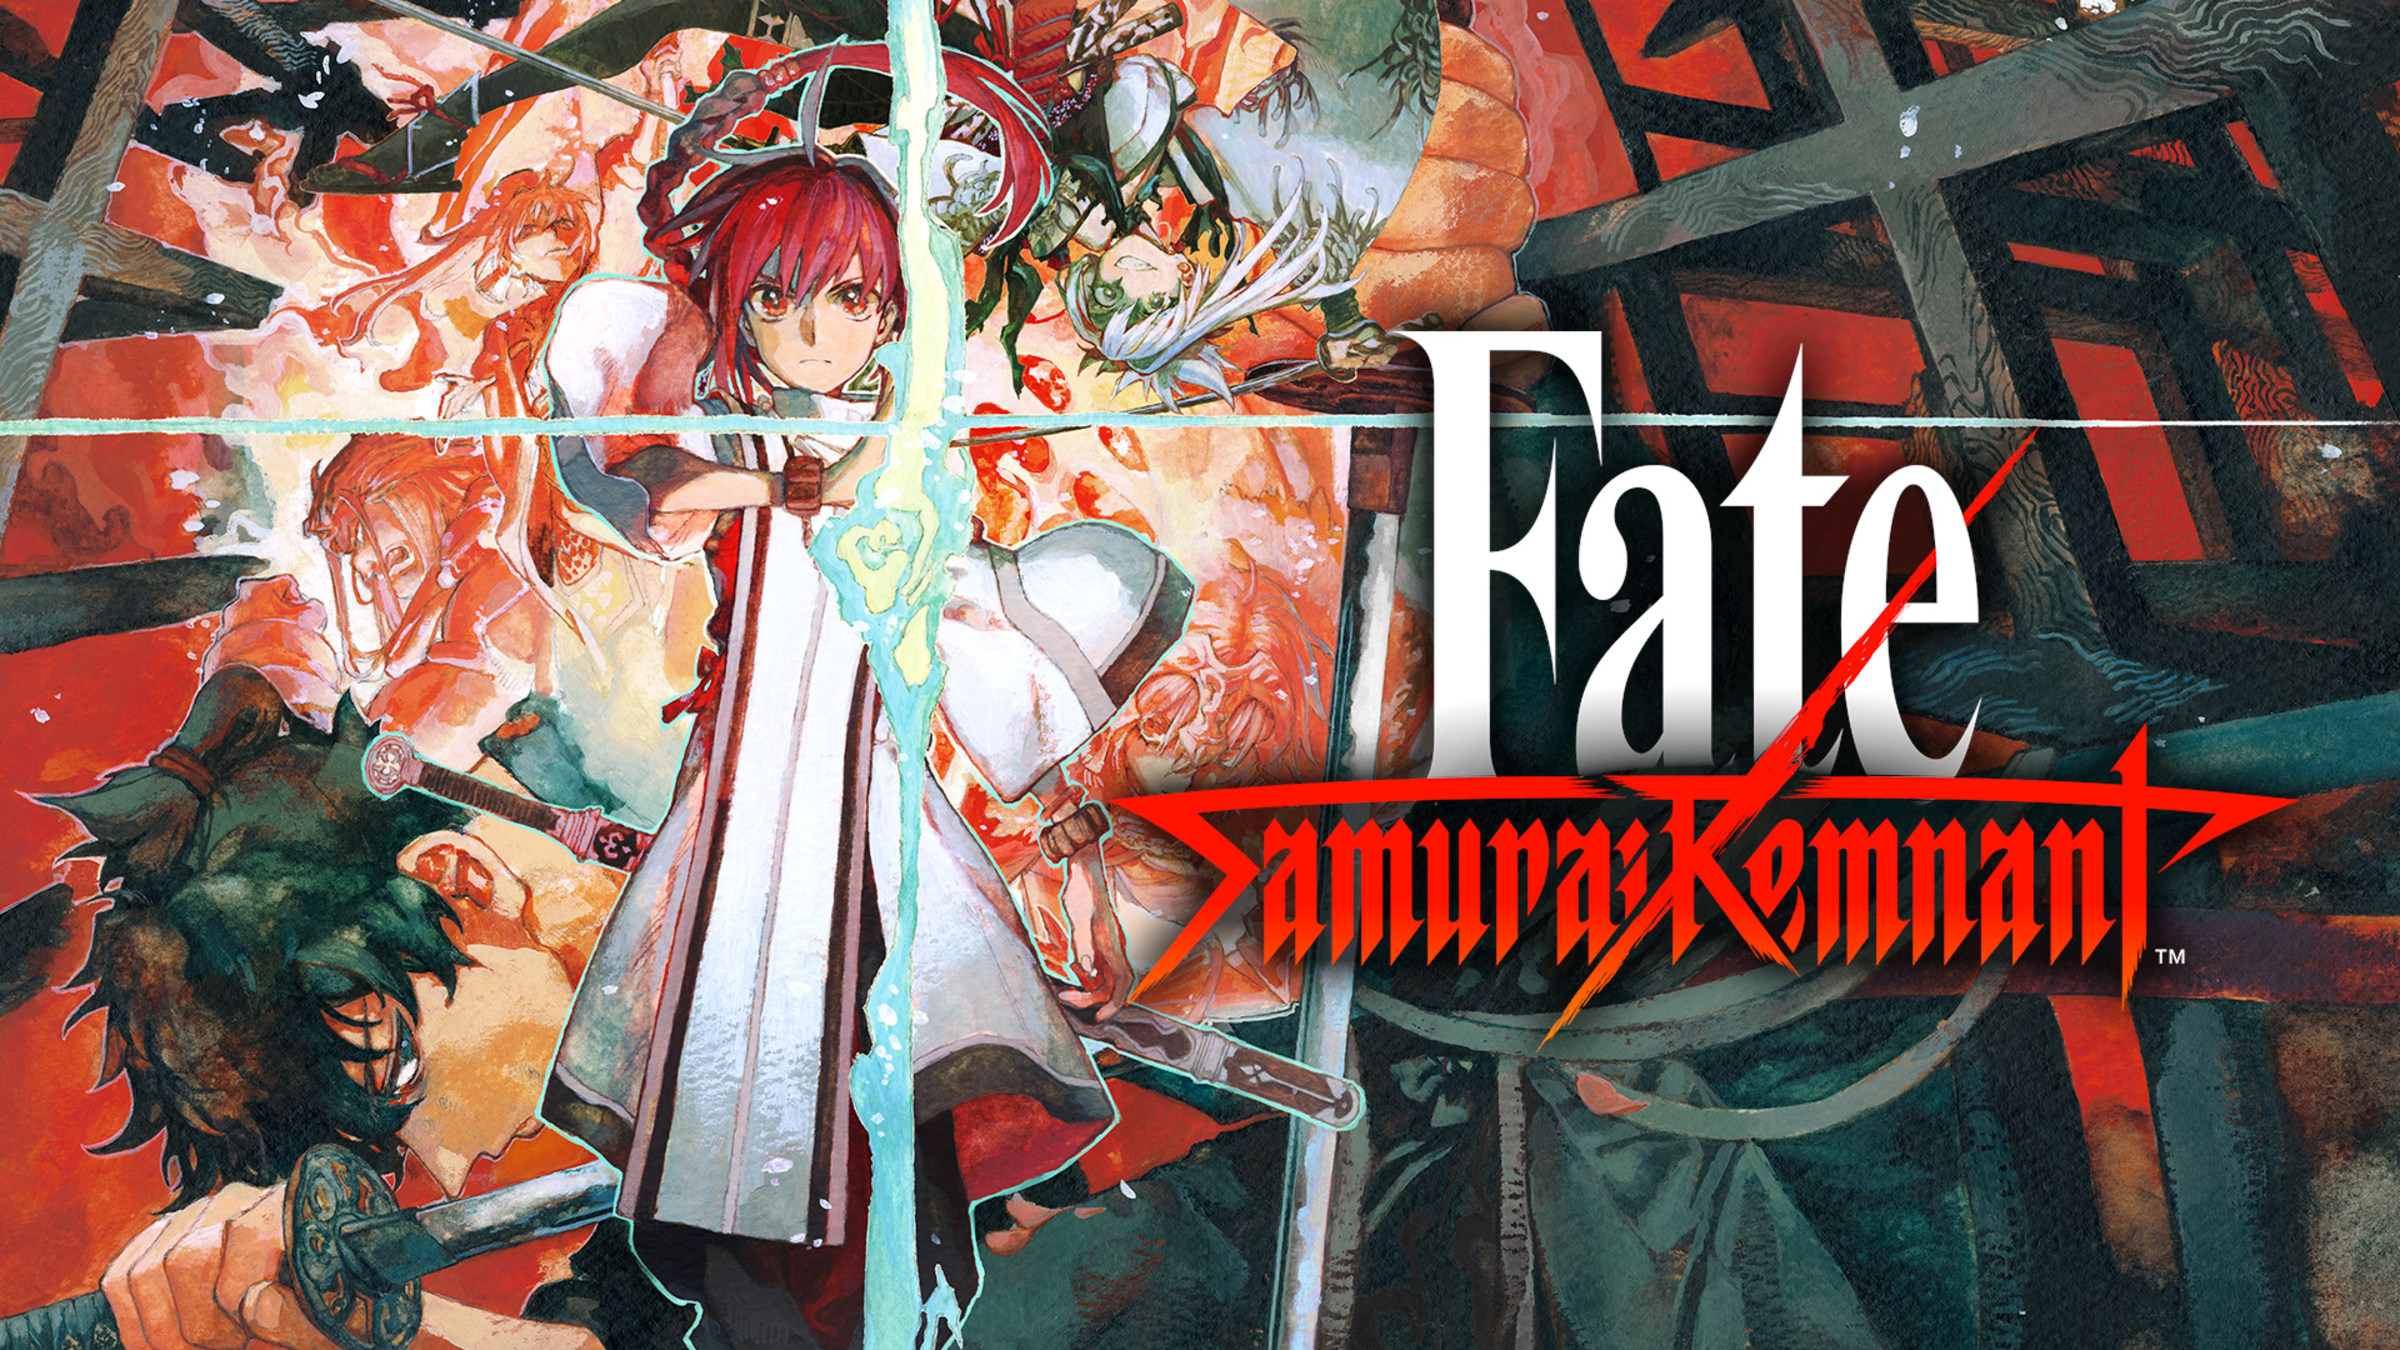 Fate /Zero All Characters, Fate /Zero Original Image Soundt…